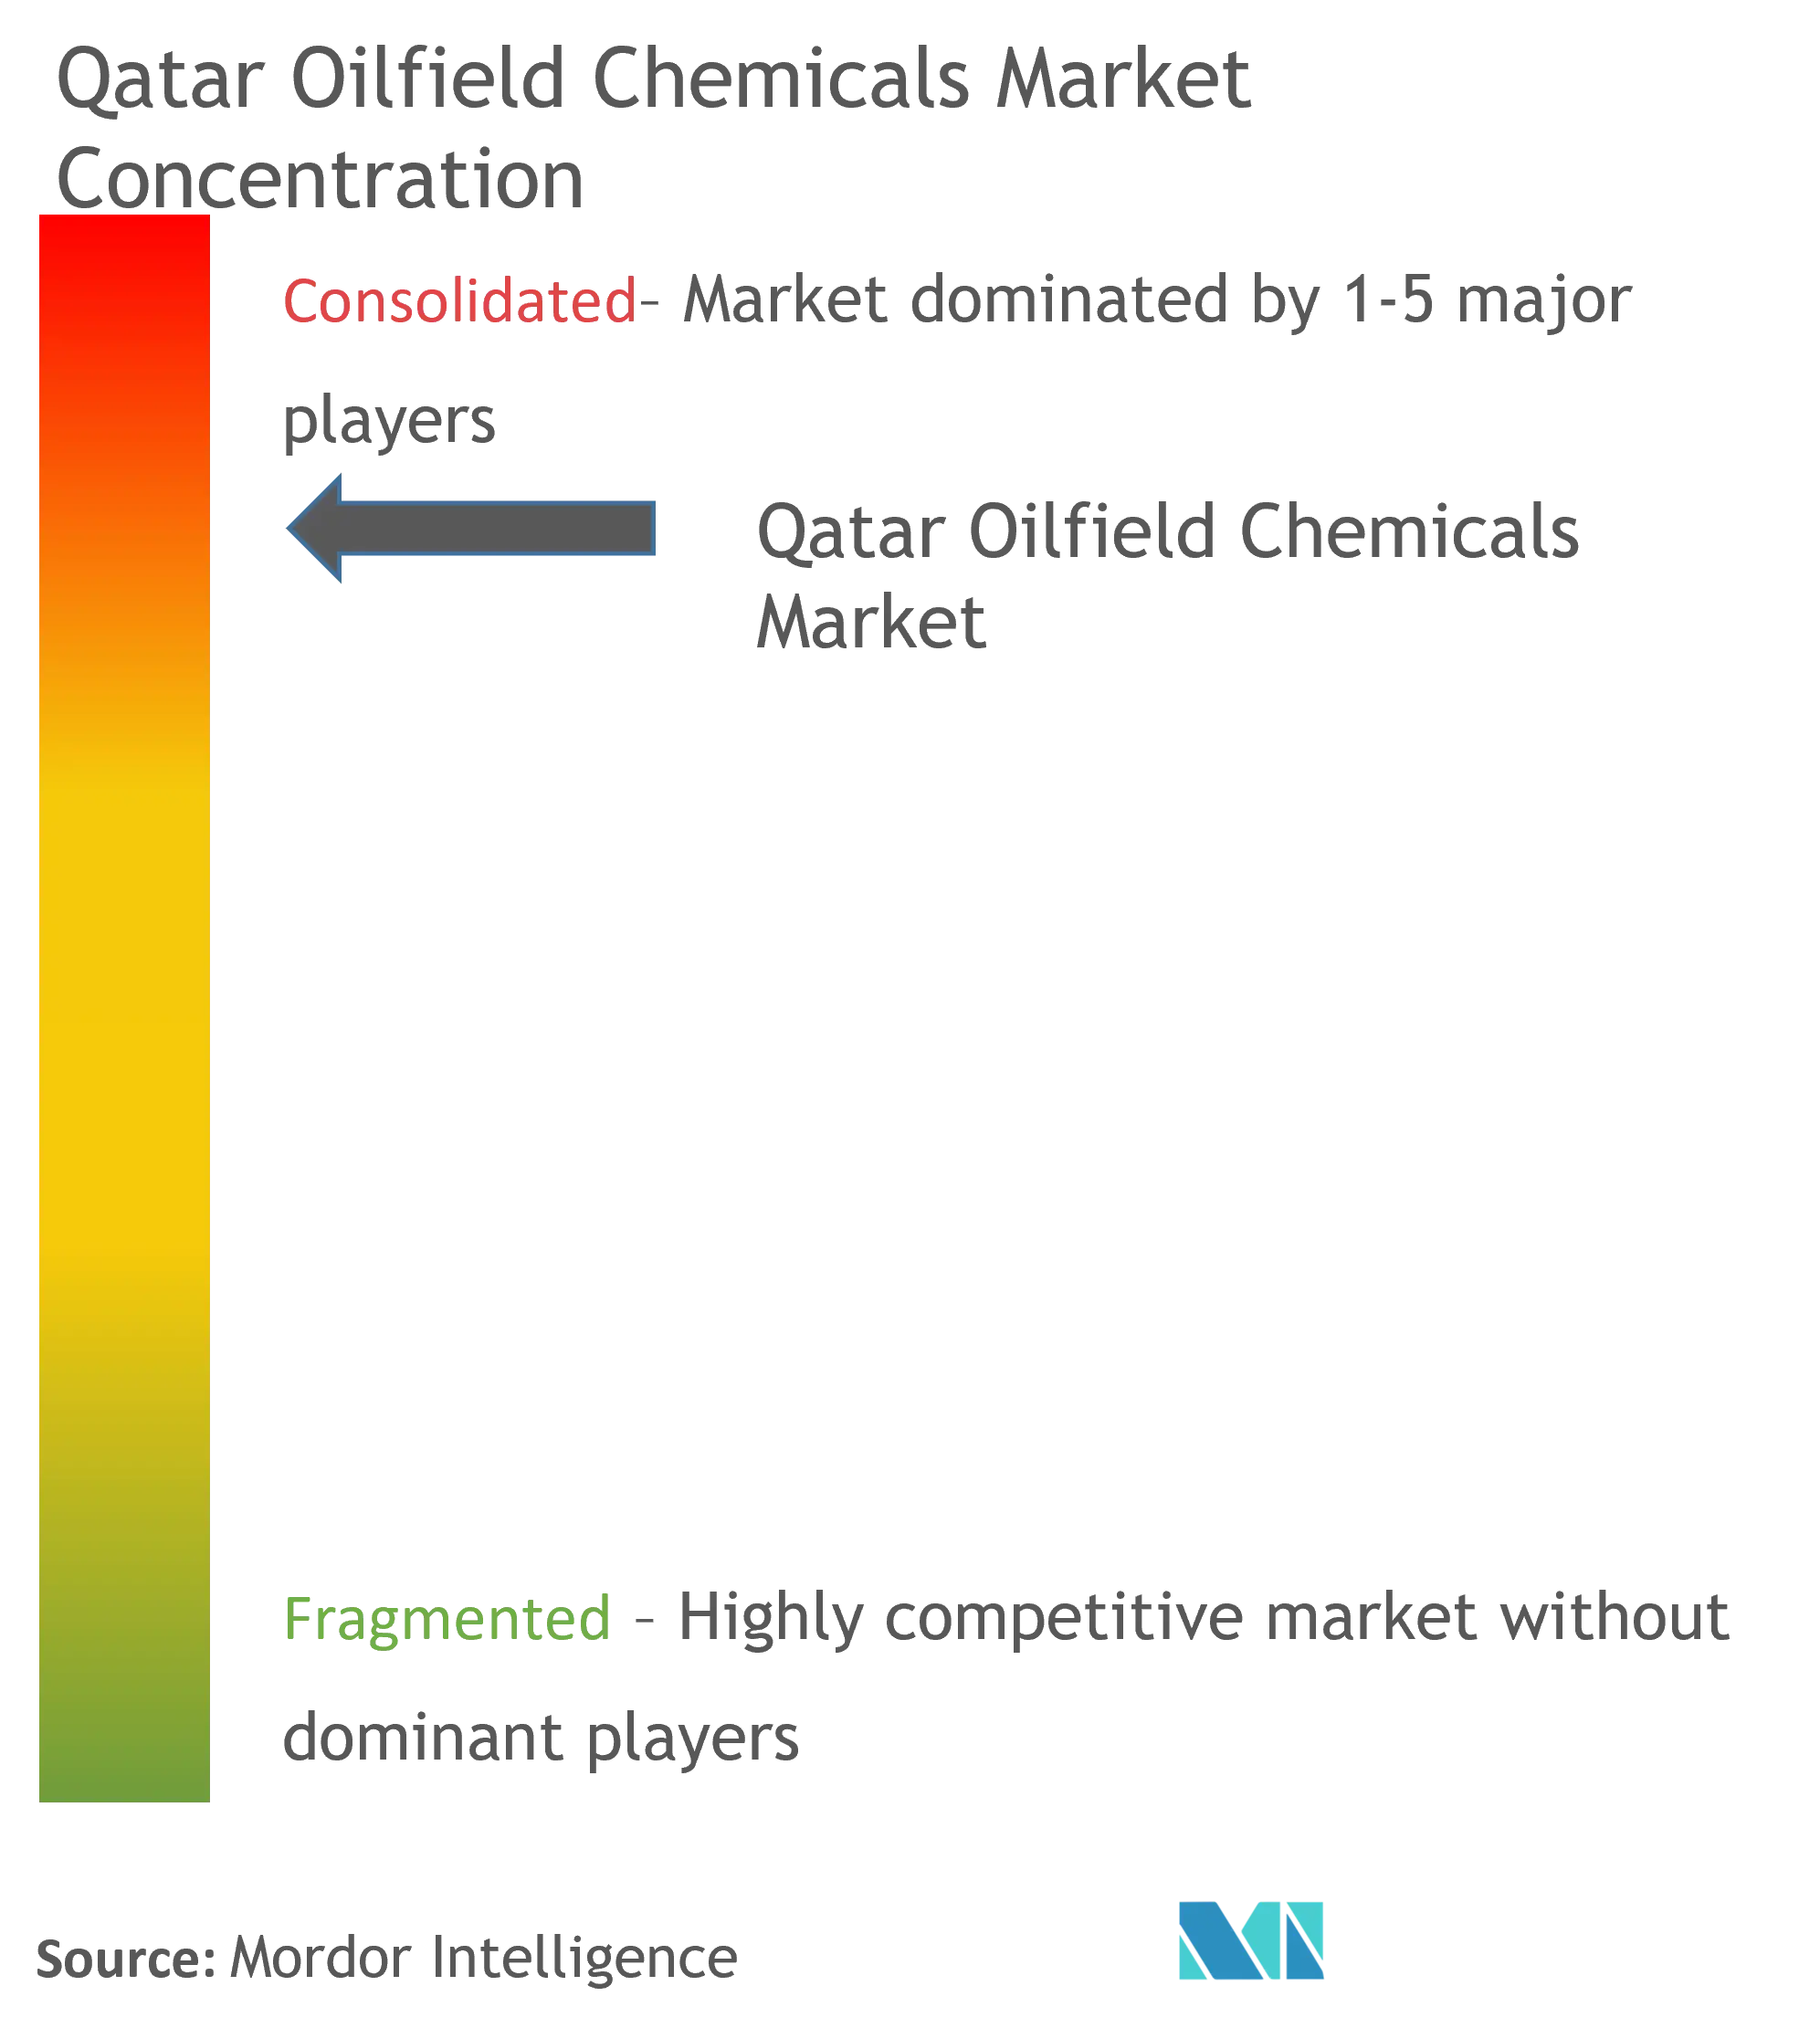 Marktkonzentration – Qatar Oilfield Chemicals Market.png